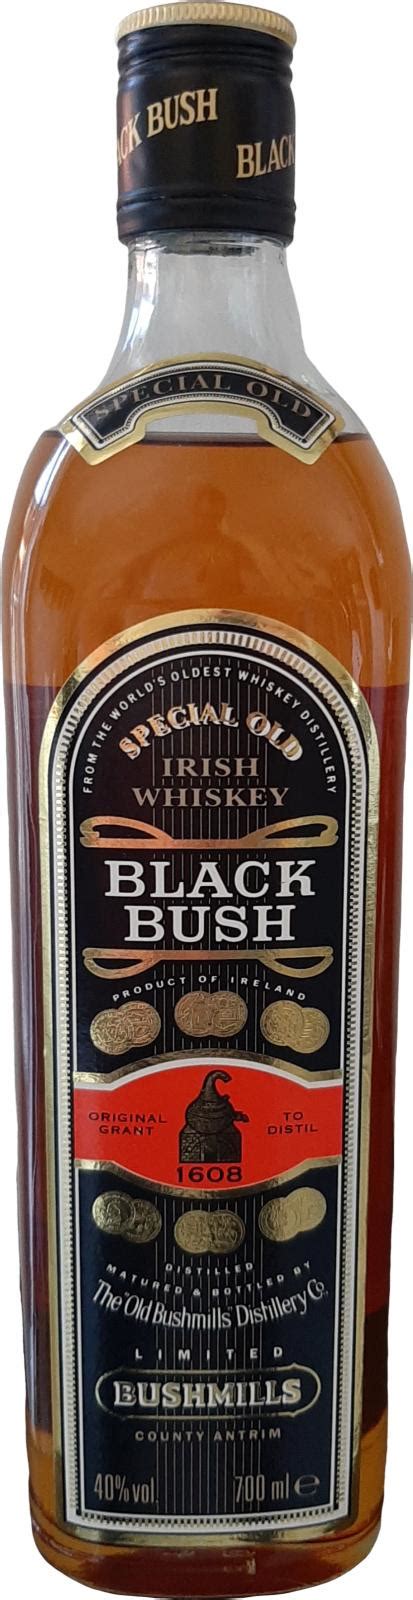 Bushmills Black Bush Ratings And Reviews Whiskybase